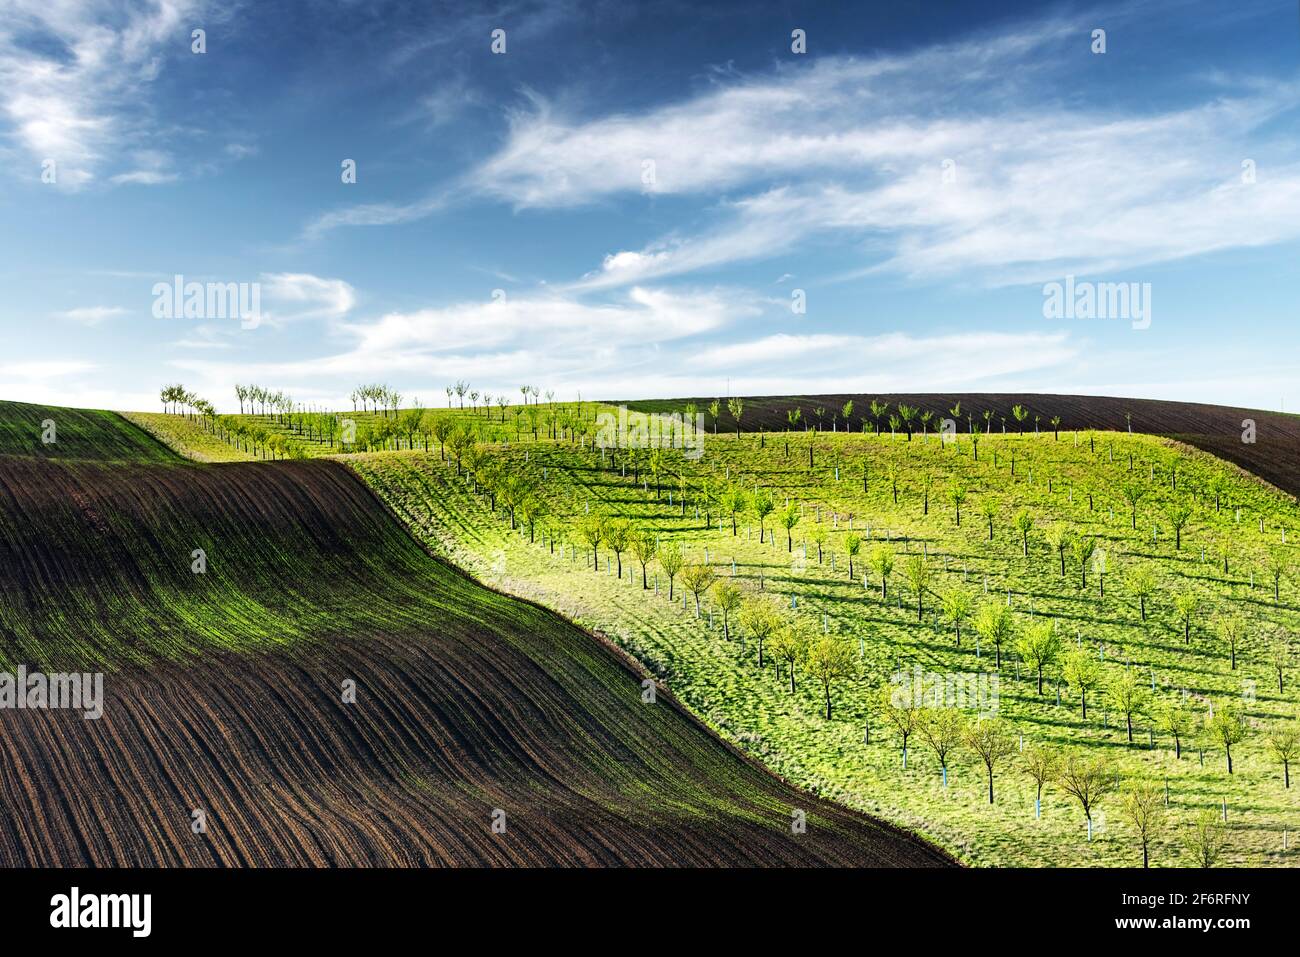 Vagues vertes, brunes et jaunes des champs agricoles de la Moravie du Sud, République tchèque. Paysage rural de printemps avec des collines colorées rayées avec arbre Banque D'Images